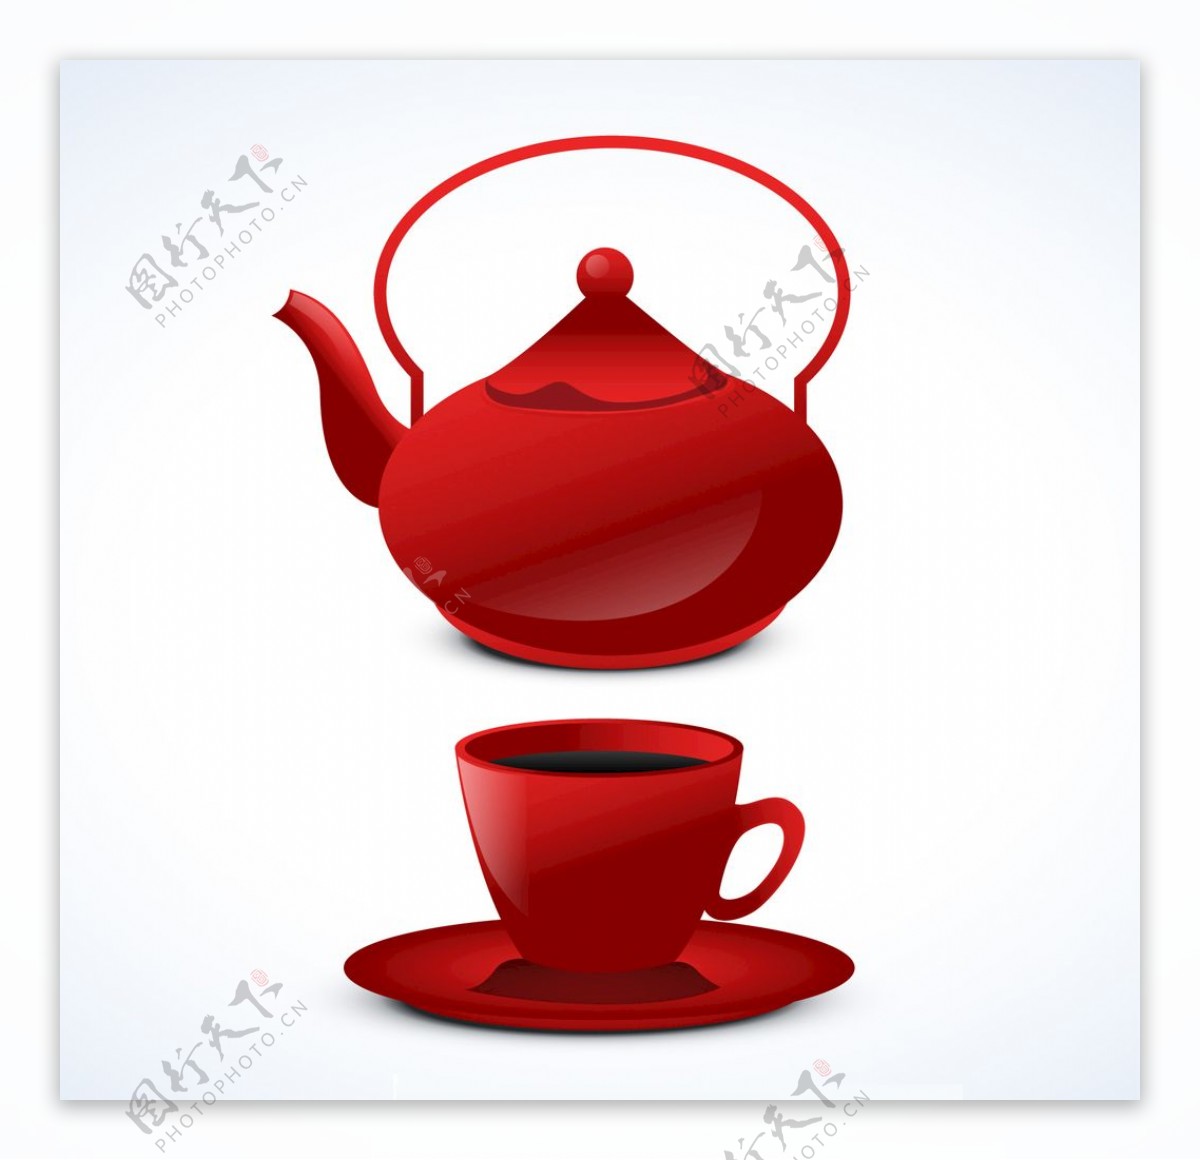 红茶壶背景